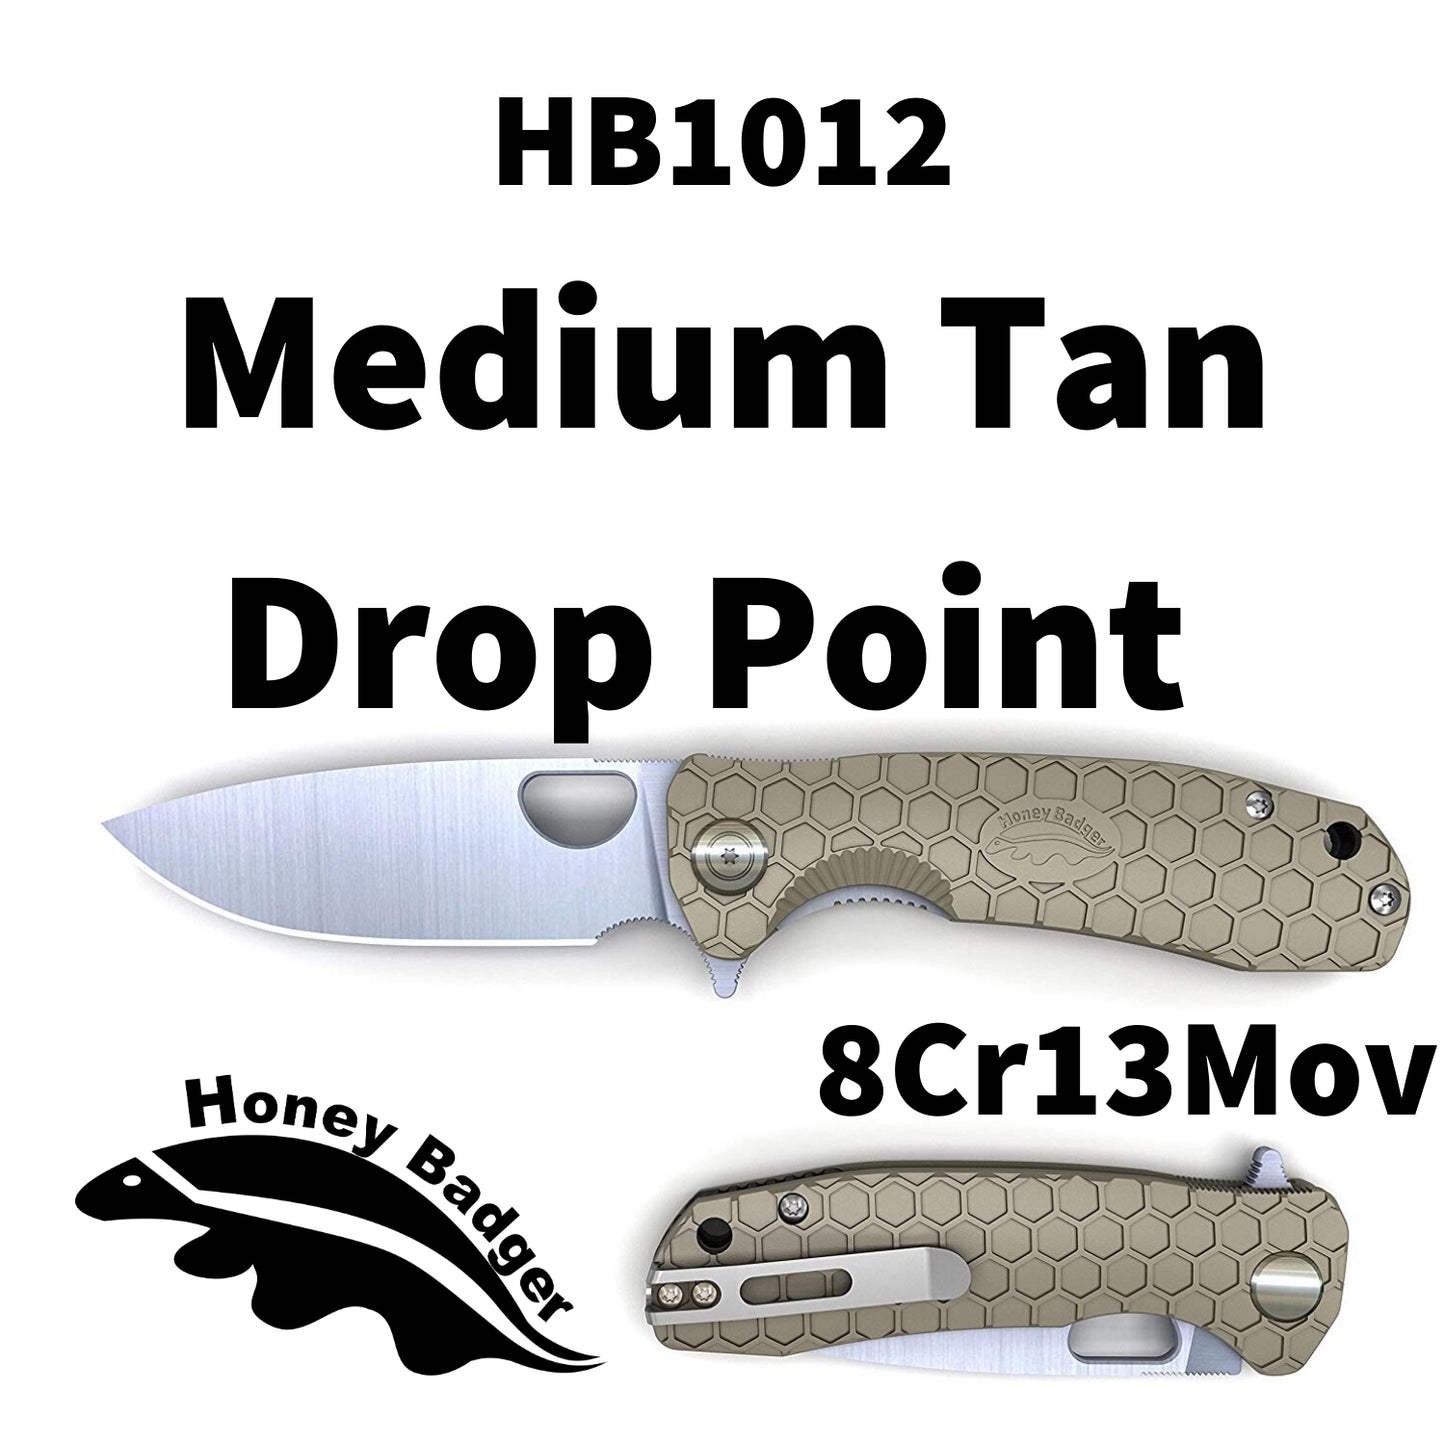 HB1012 - HONEY BADGER FLIPPER MEDIUM TAN